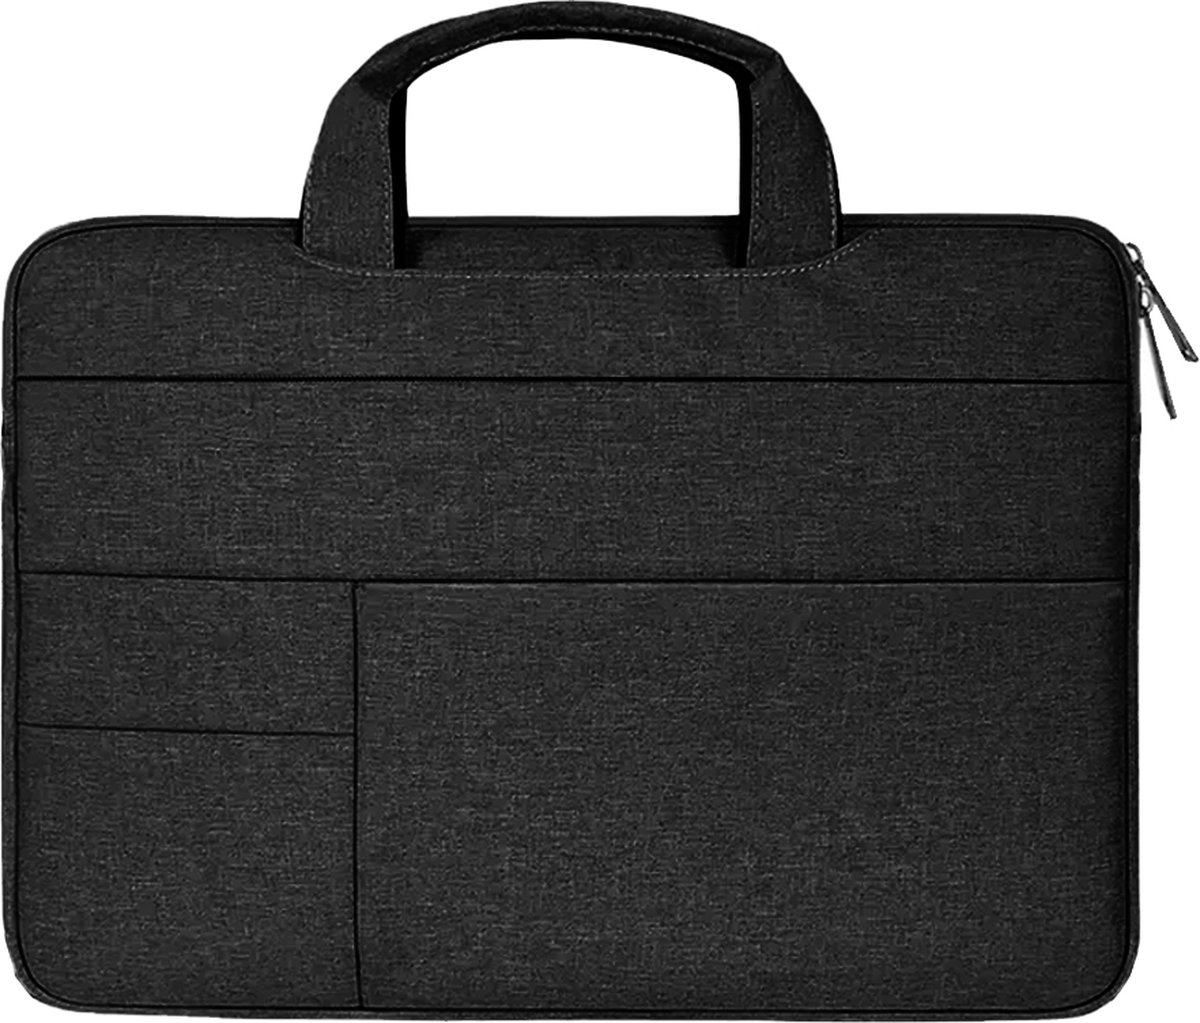 Case2go - Laptophoes geschikt voor DynaBook Portege - Laptoptas 13 inch / 13.3 inch - Spatwaterdicht - Met Handvat - Zwart